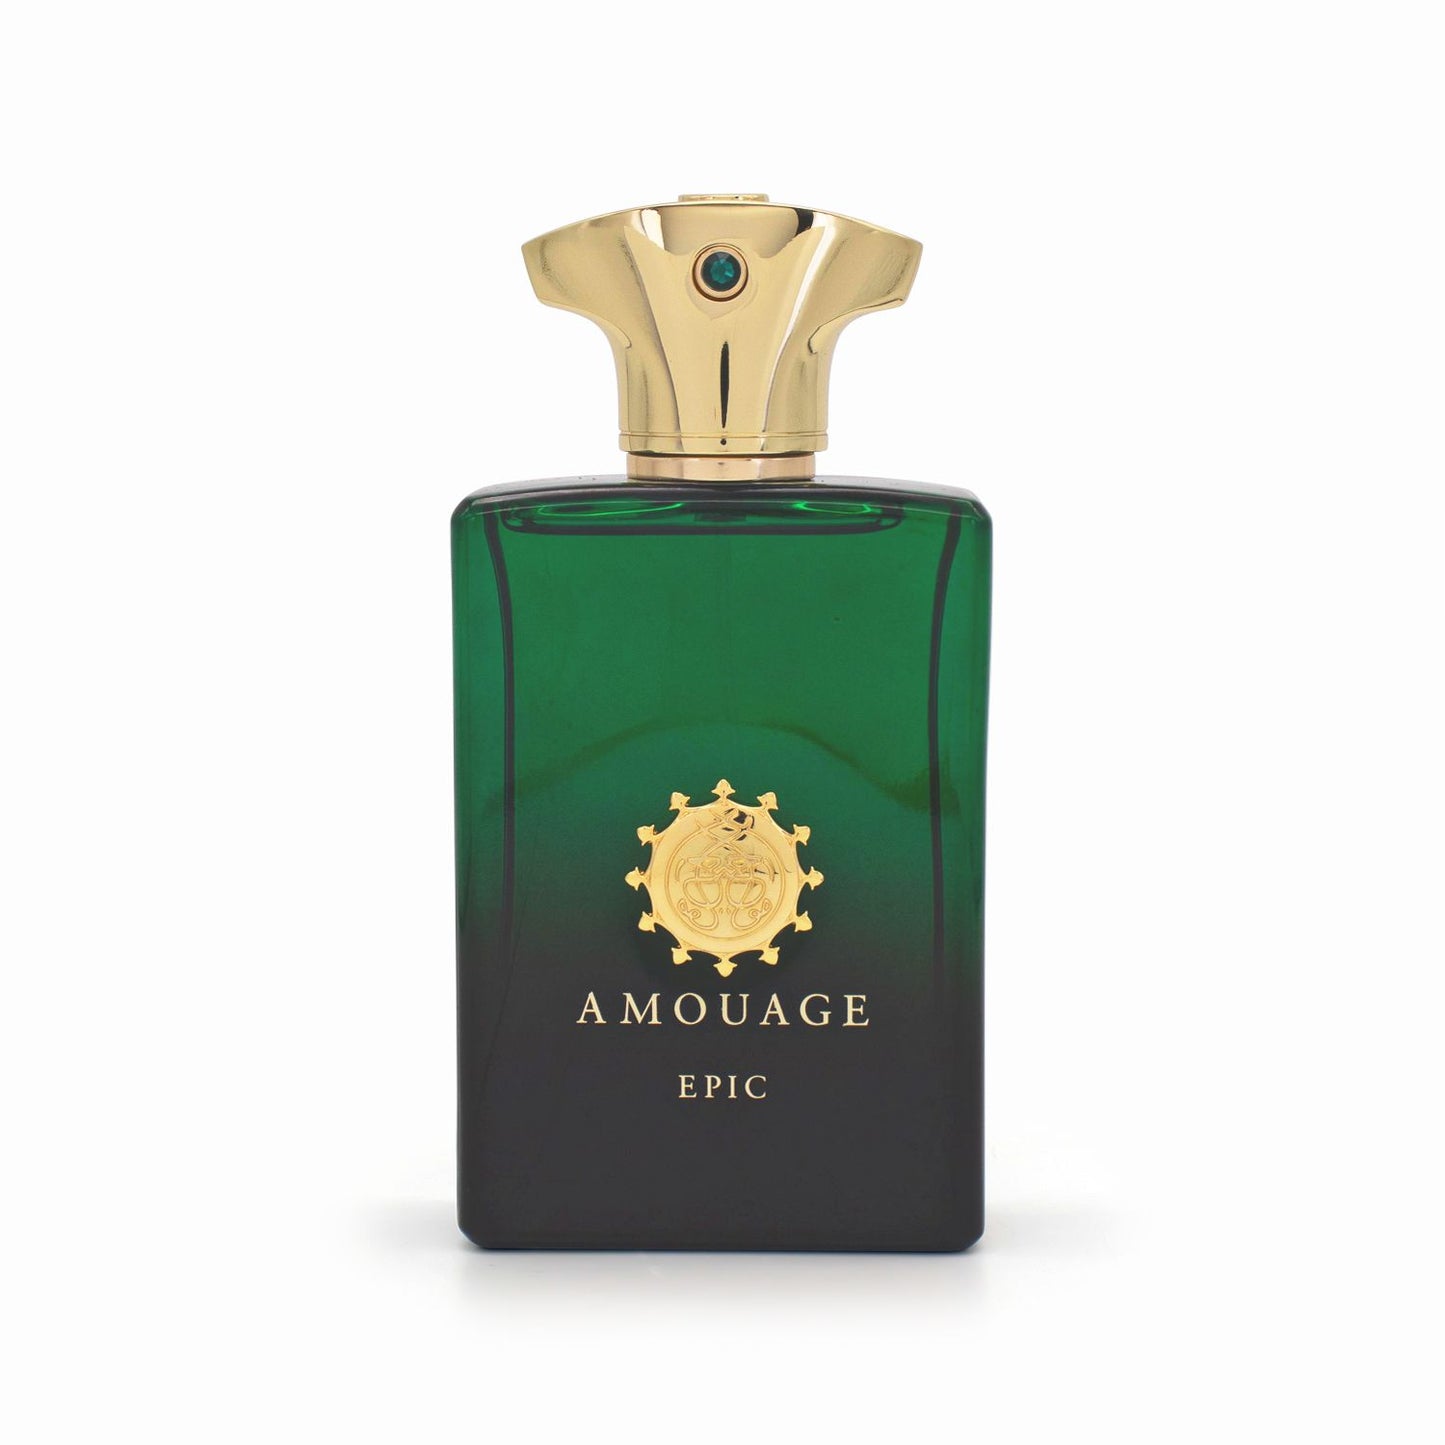 AMOUAGE Epic Man Eau de Parfum 100ml - Imperfect Box